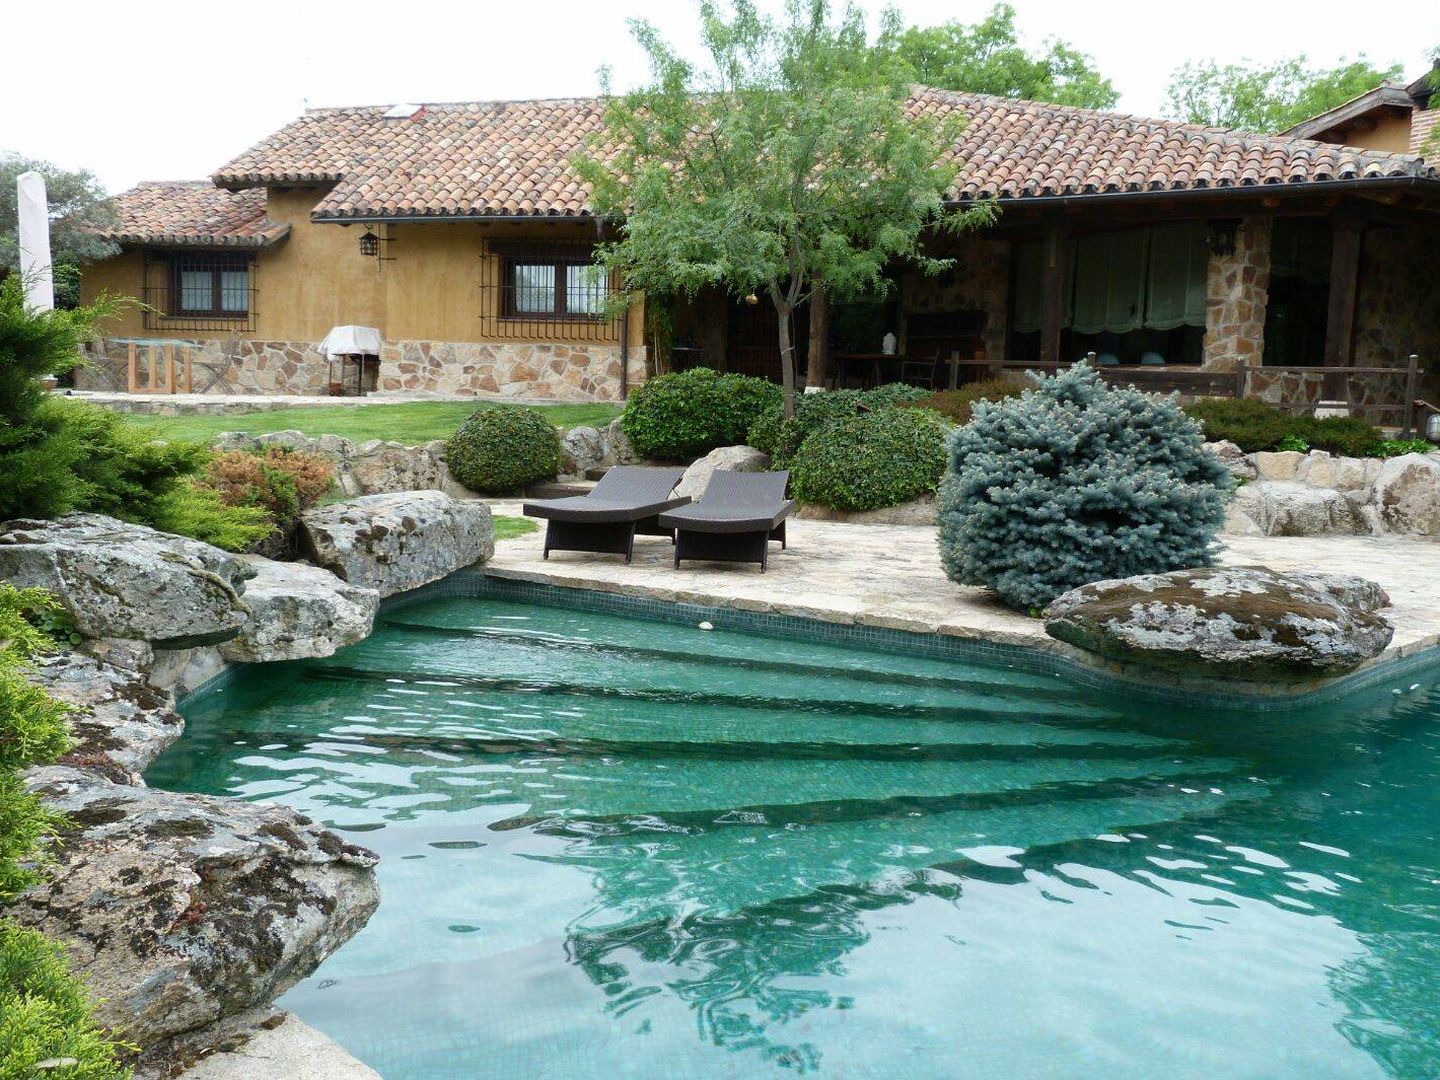 La piscina es una de las principales atracciones de Villa Podemos.